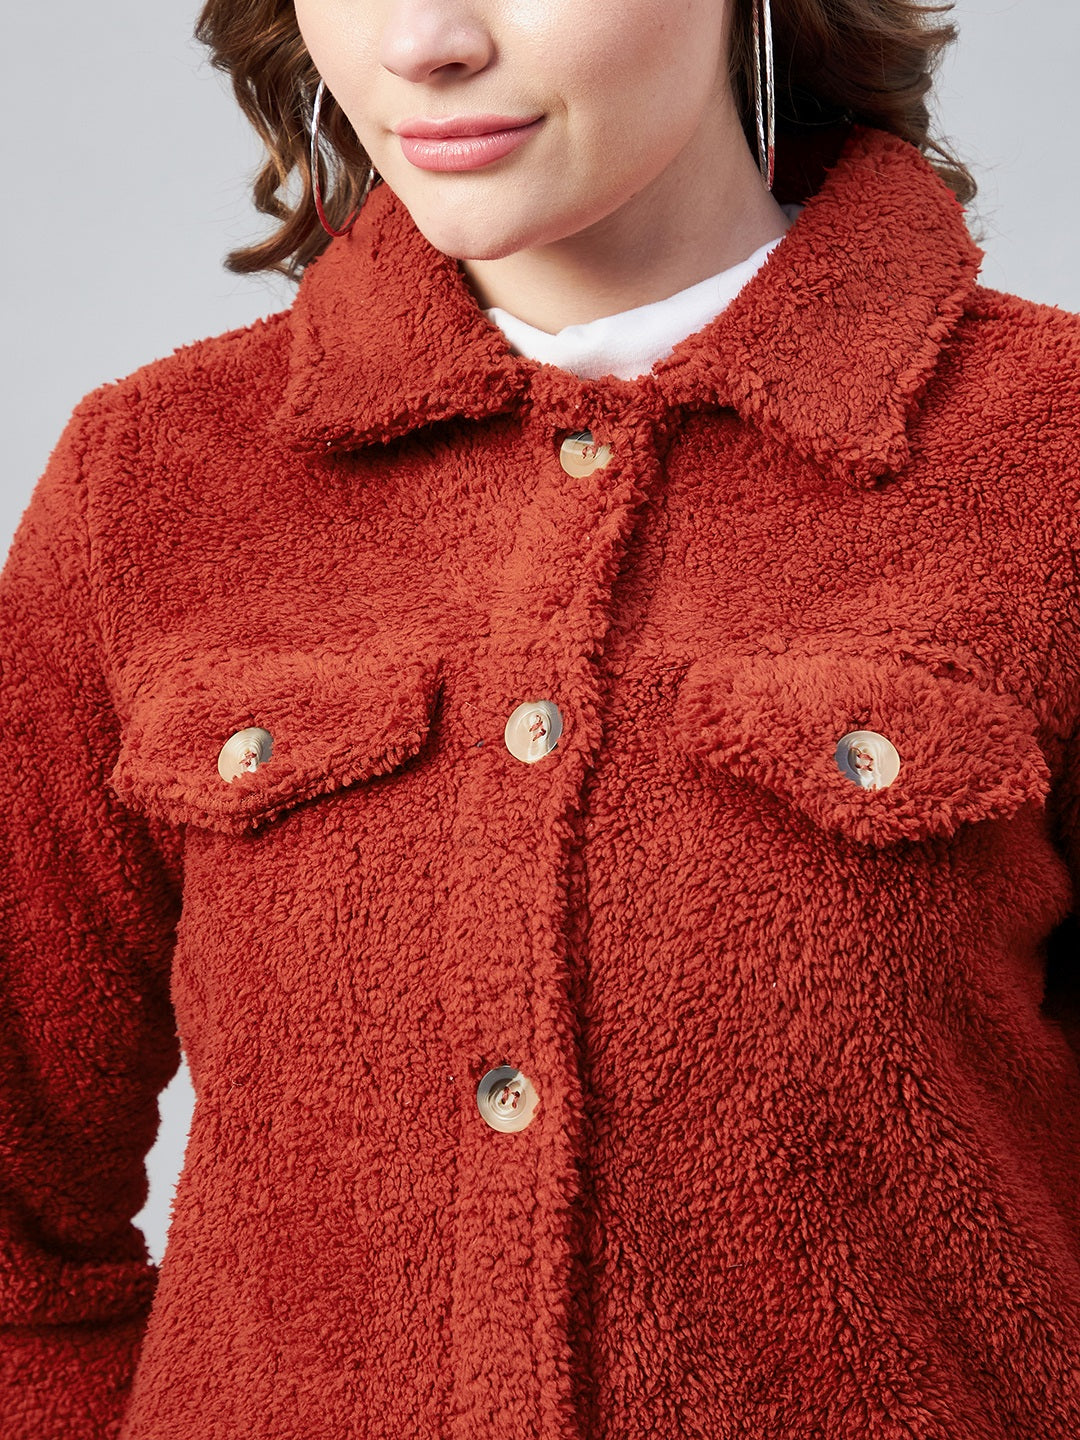 StyleStone Women's Red Fleece Casual Winter Jacket